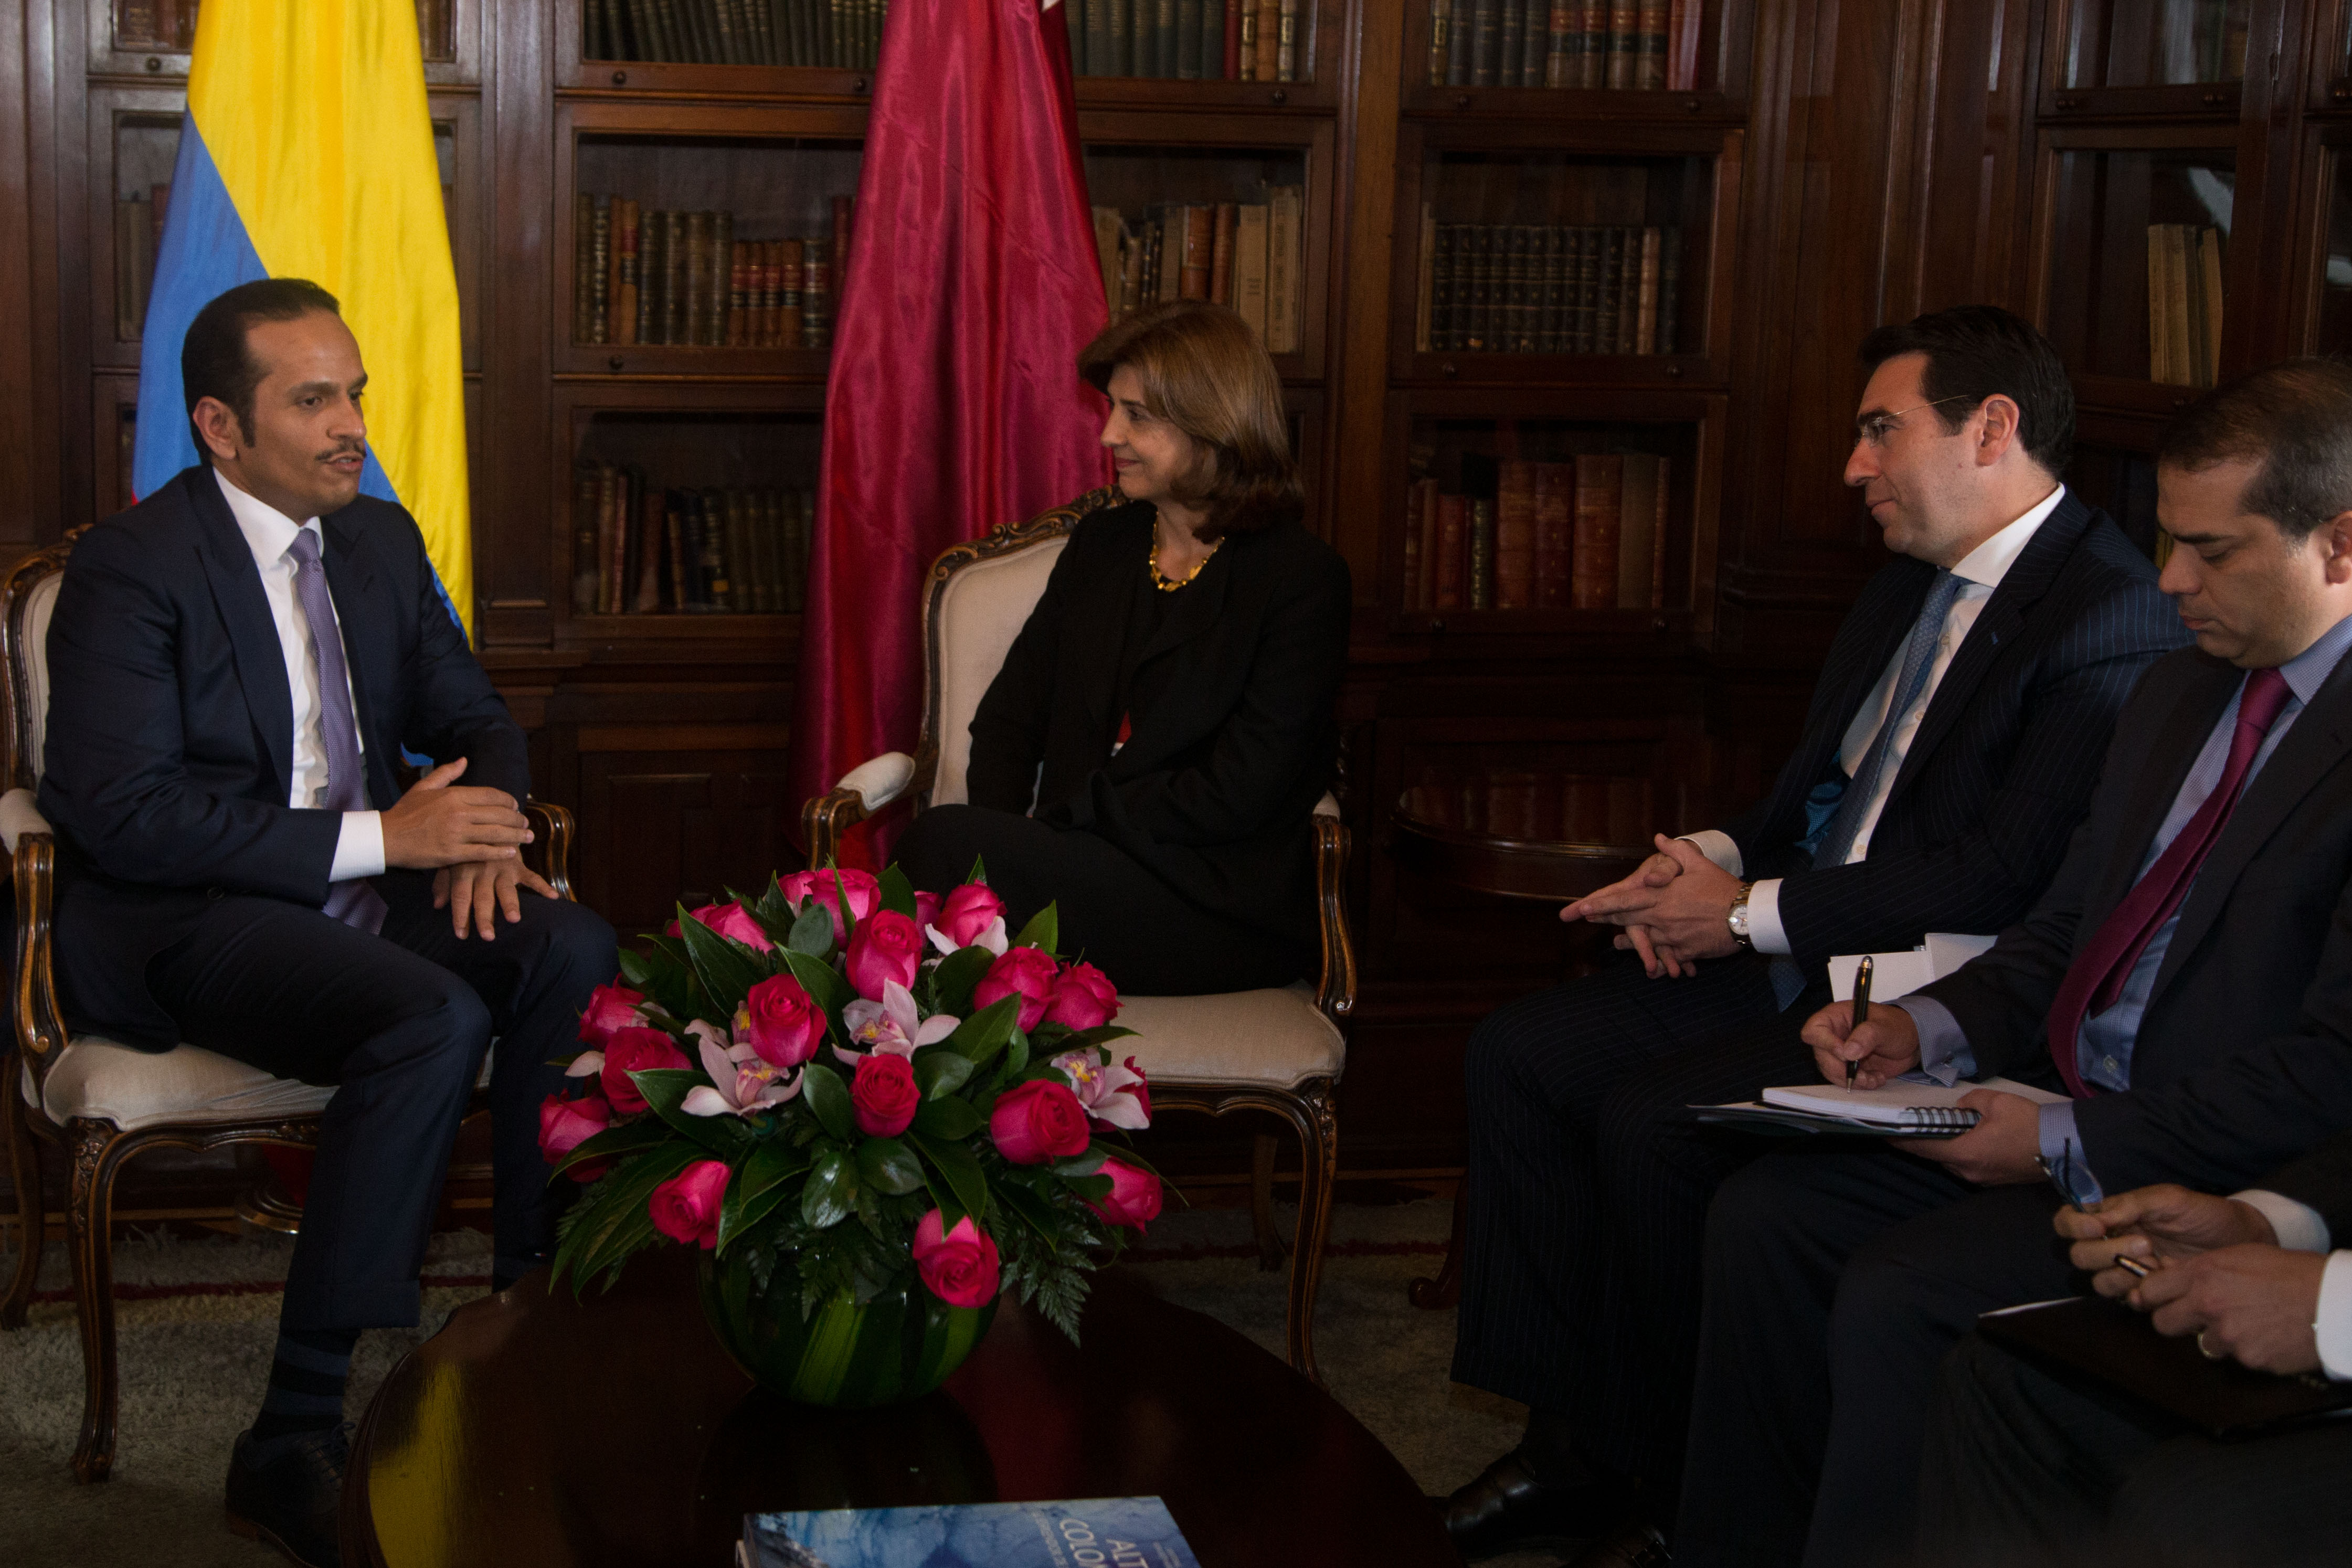 La Ministra de Relaciones Exteriores, María Ángela Holguín, recibió en el Palacio de San Carlos a su homólogo de Qatar, Su Excelencia el Jeque Mohammed bin Abdulrahman bin Jassim Al-Thani, quien está en el país en el marco de la visita oficial del Emir de Qatar a Colombia